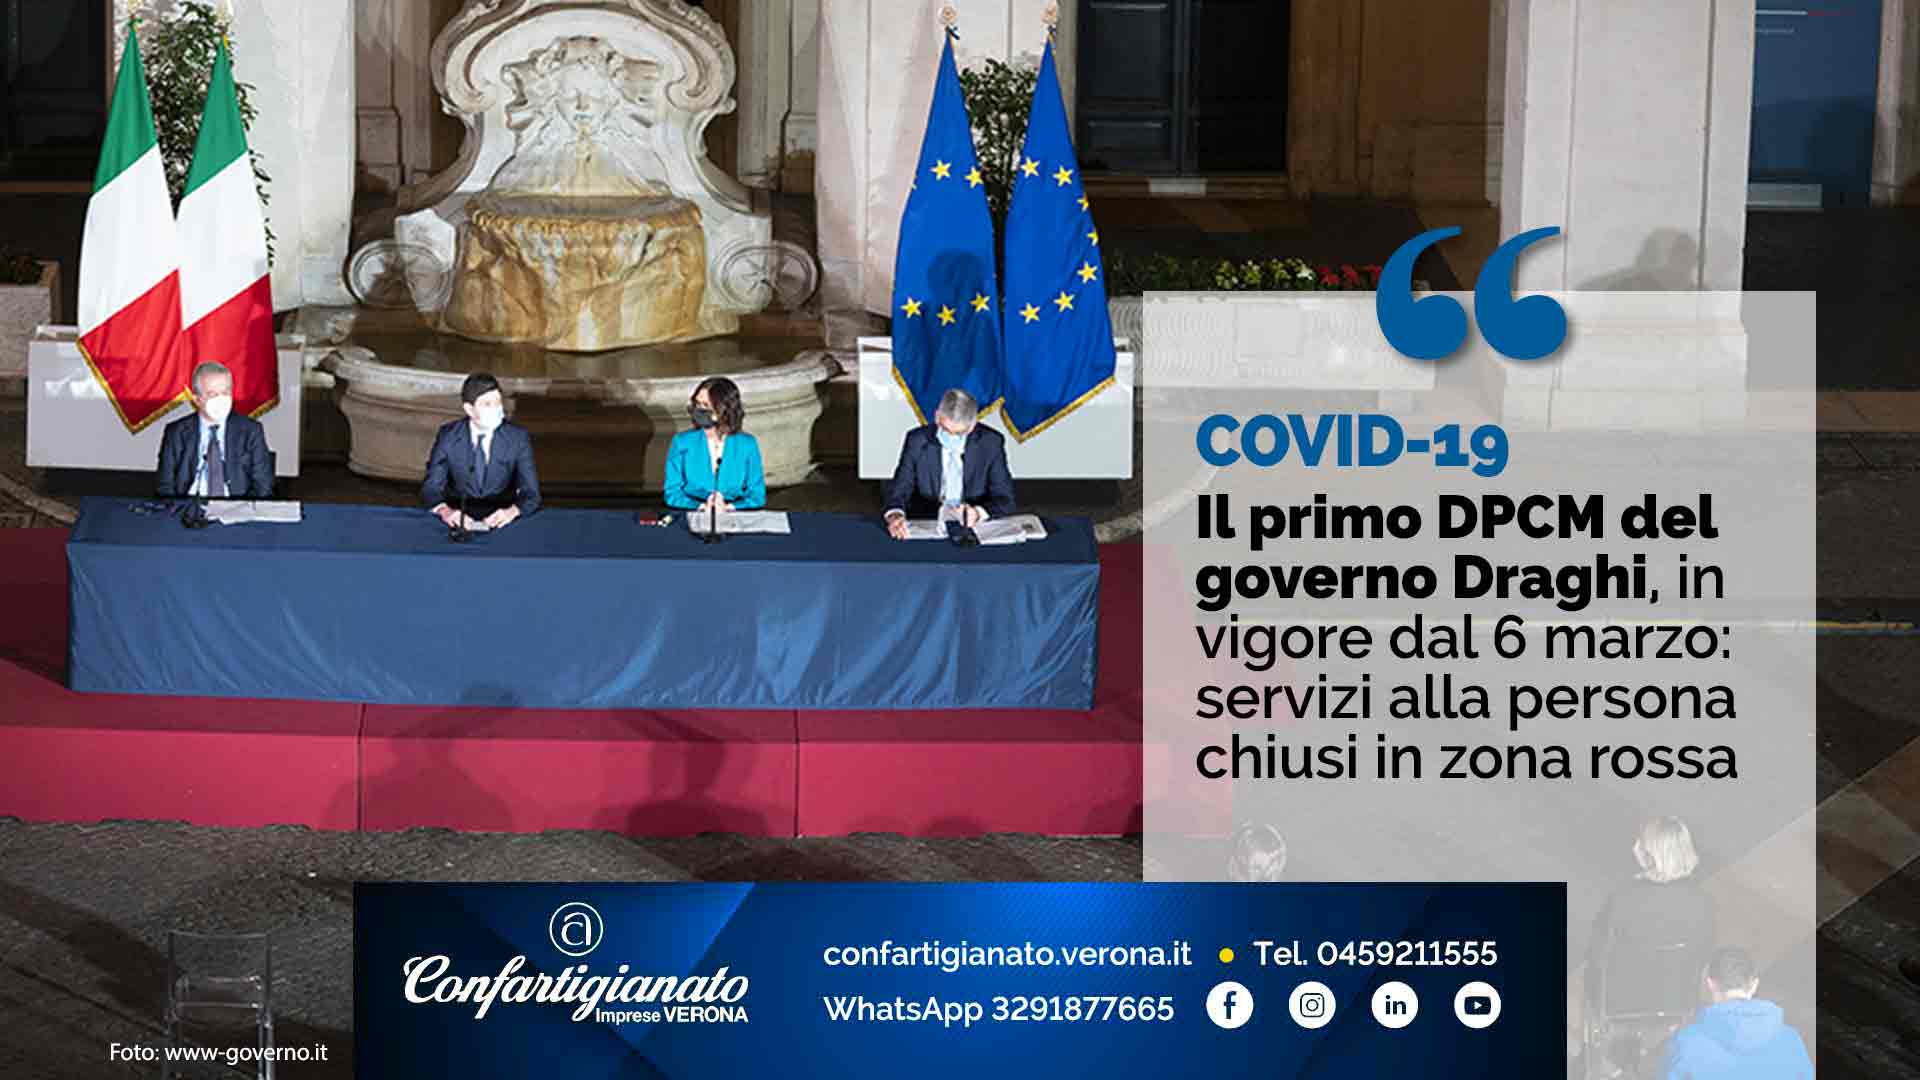 COVID-19 – Il primo DPCM del governo Draghi, in vigore dal 6 marzo: servizi alla persona chiusi in zona rossa